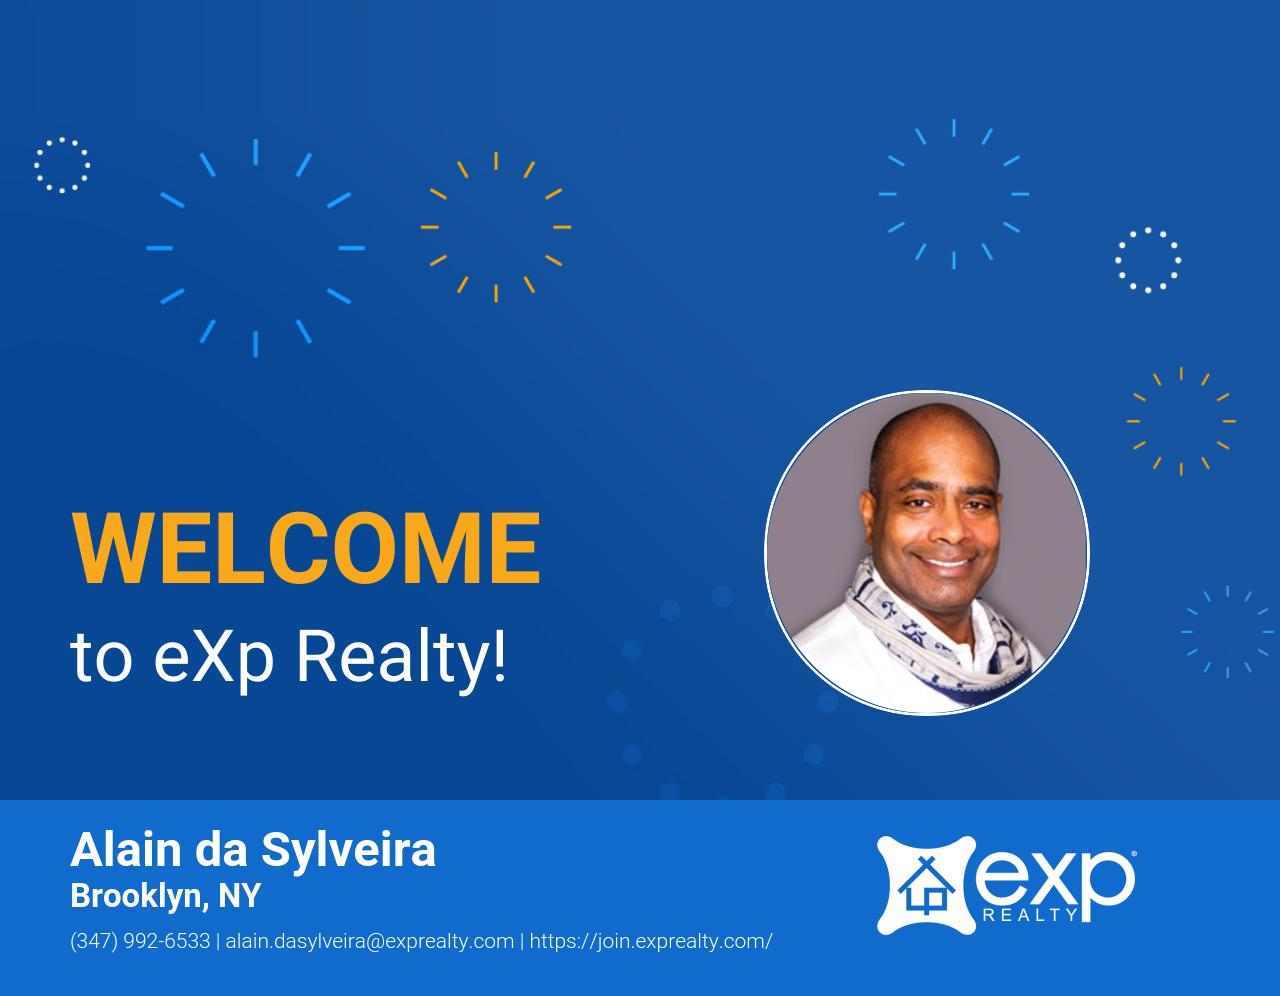 Welcome to eXp Realty Alain da Sylveira!